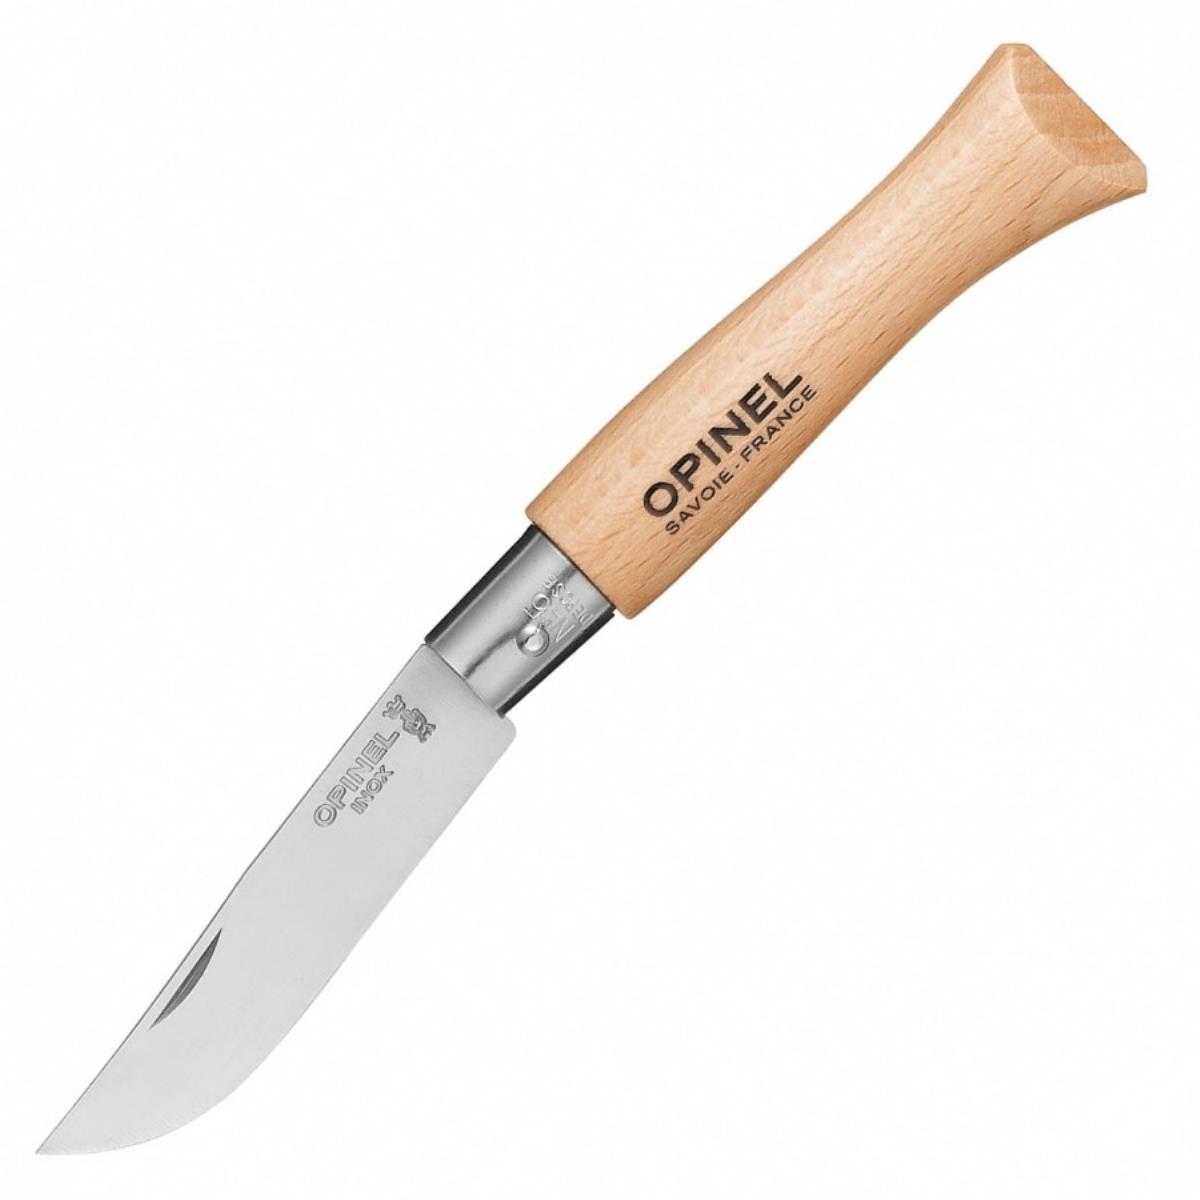 Нож №5 VRI Tradition Inox (нержавеющая сталь, рукоять бук, длина клинка 6 см) 0010729 OPINEL складной нож нквд 4 сталь m390 рукоять карбон